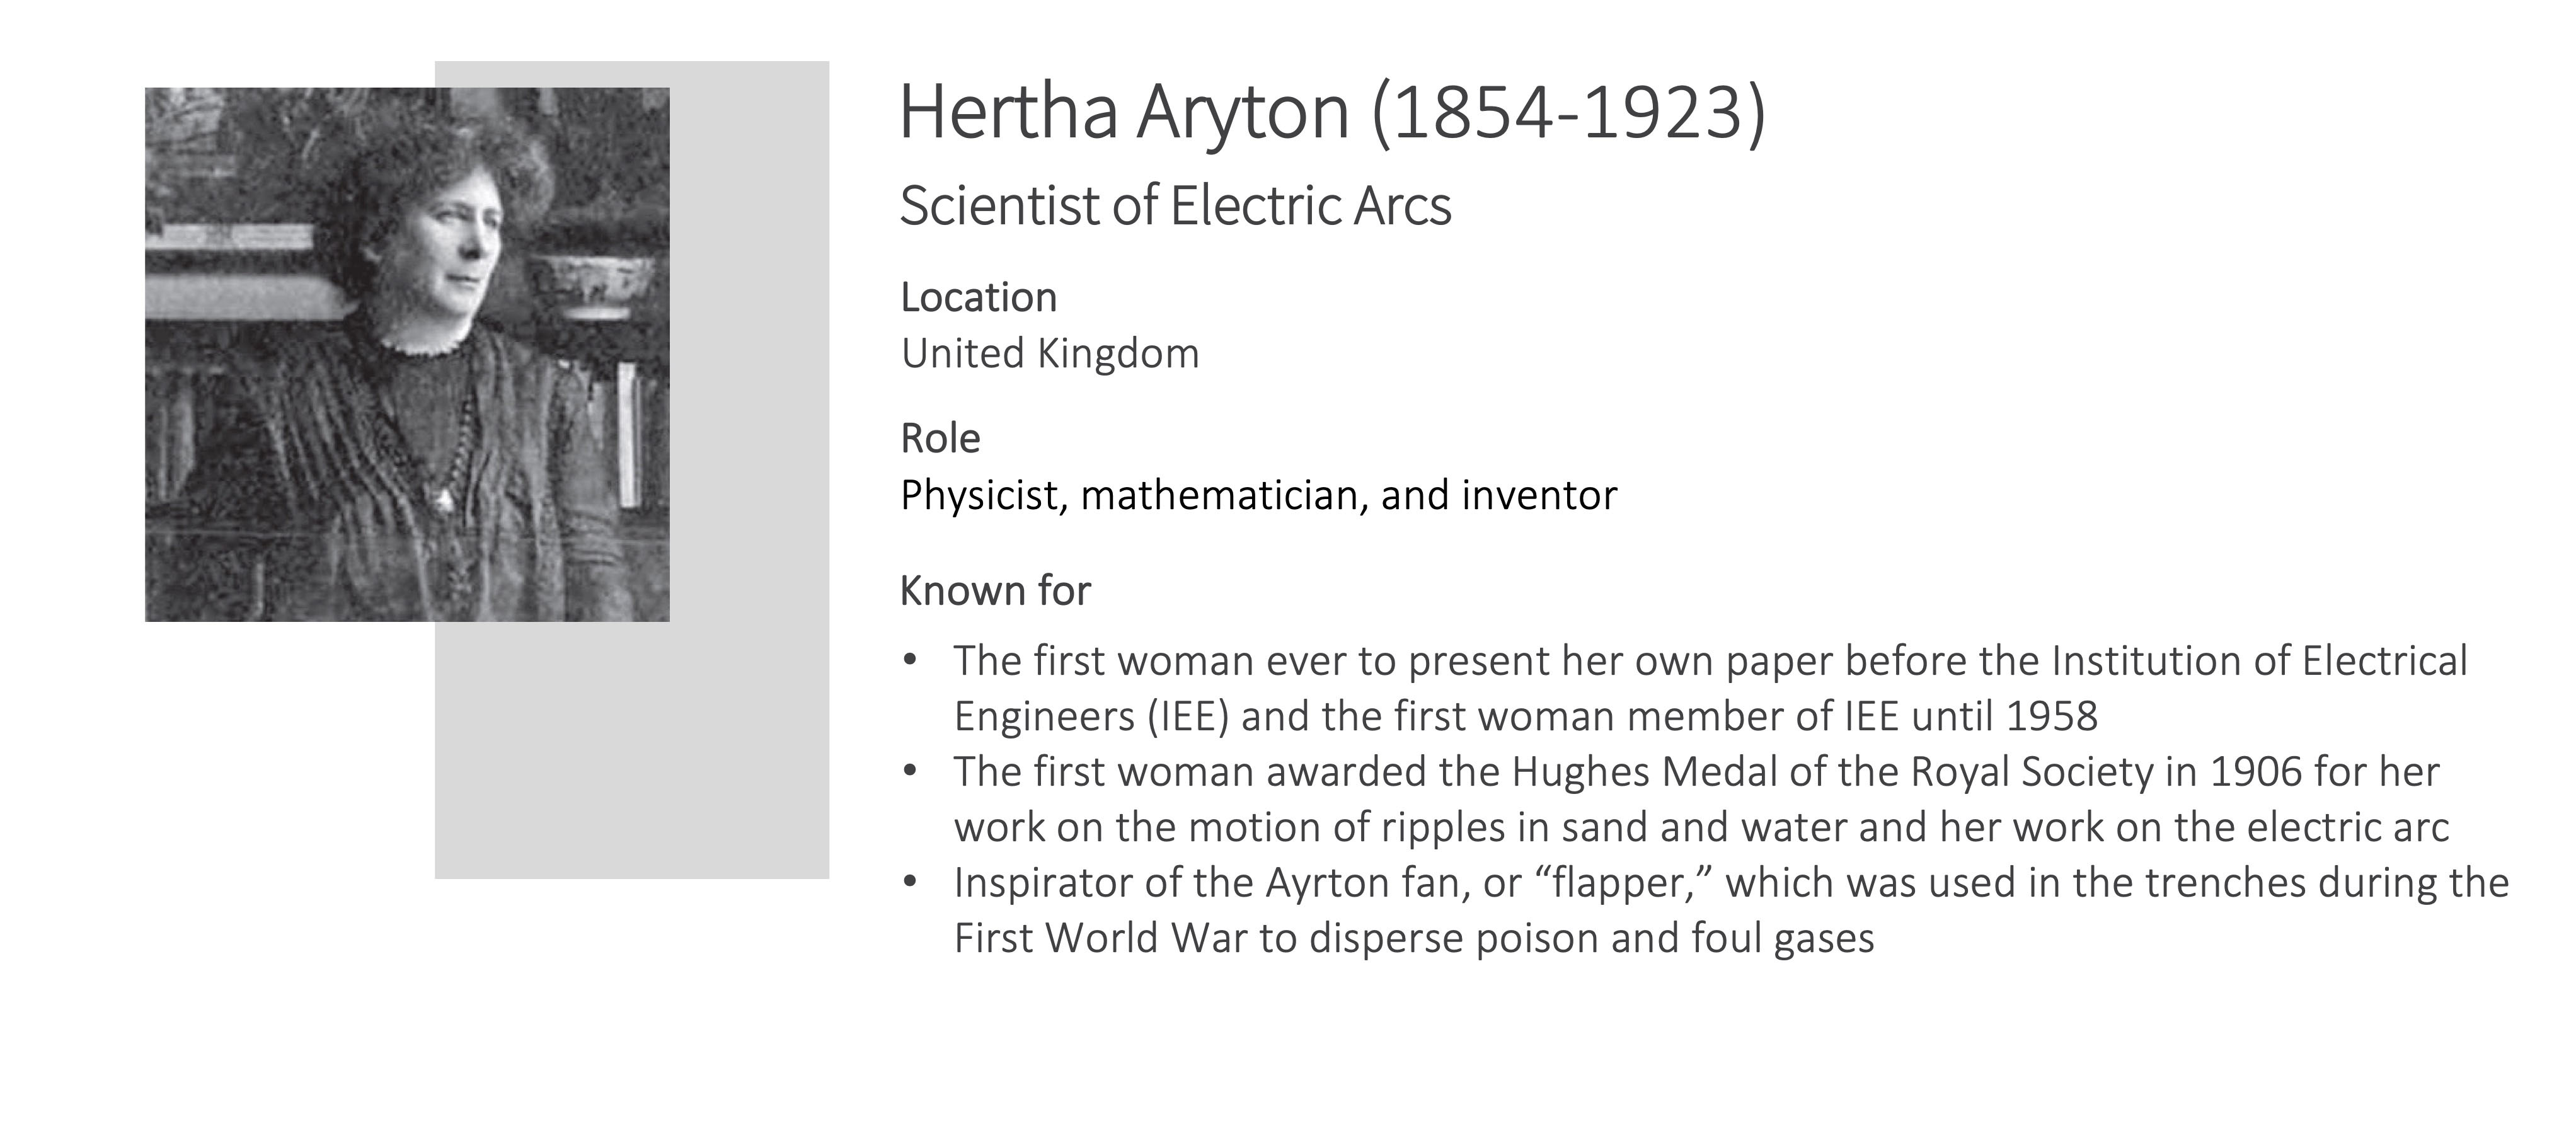 Hertha Aryton